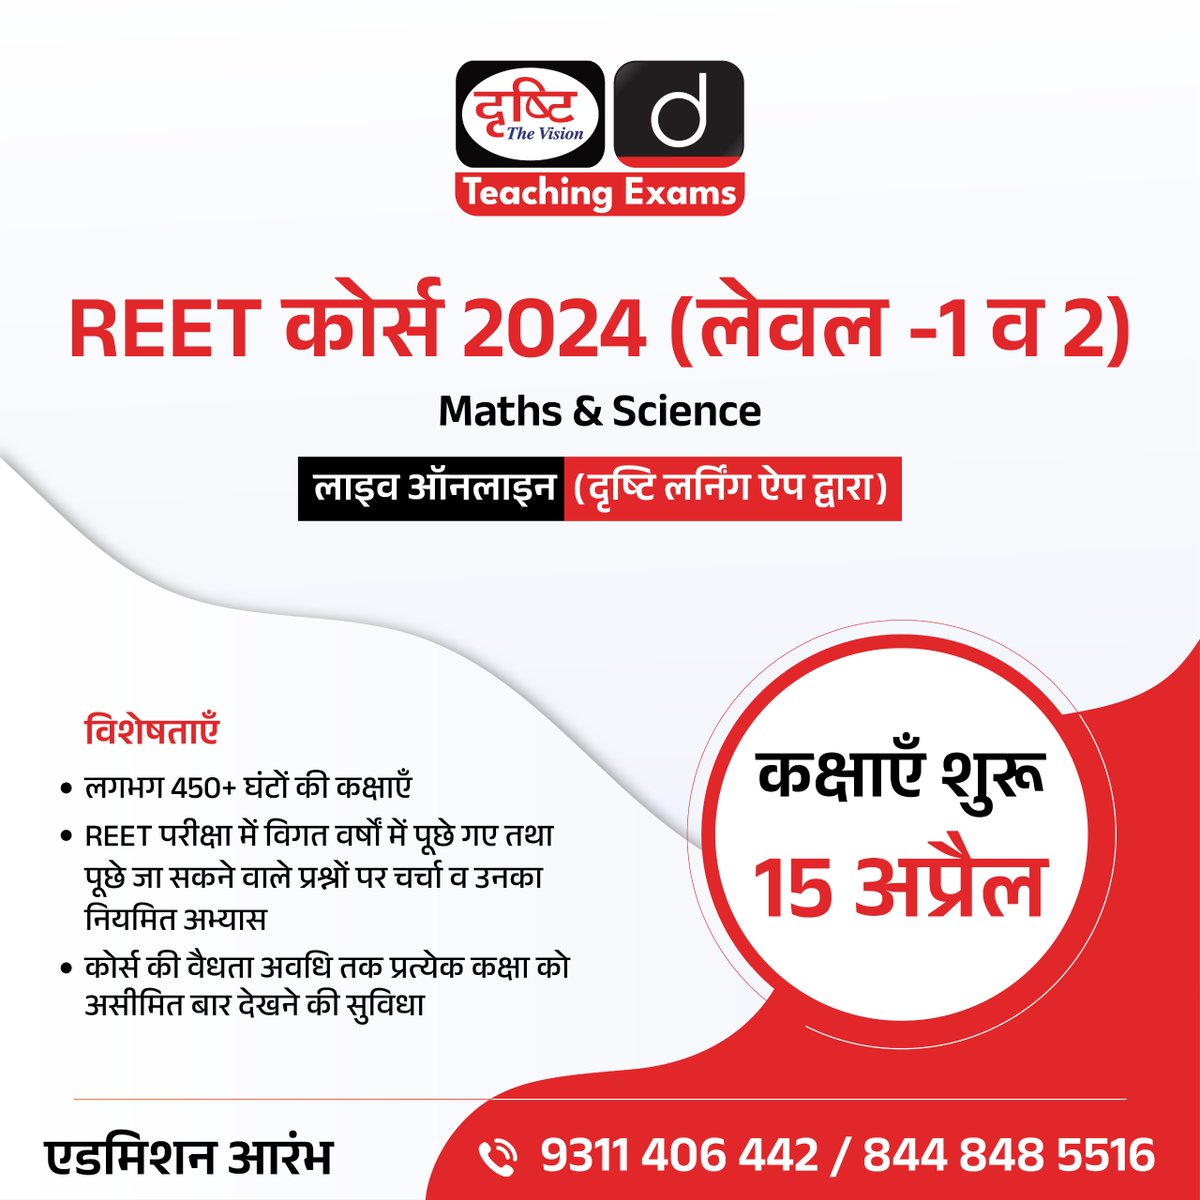 REET कोर्स 2024 (लेवल -1 व 2)

Maths & Science

लाइव ऑनलाइन (दृष्टि लर्निंग ऐप द्वारा)

एडमिशन आरंभ

अधिक जानकारी के लिये क्लिक करें इस लिंक पर: drishti.xyz/REET-Level-1an…

#REET #Maths #Science #Level1 #Level2 #DrishtiTeachingExams